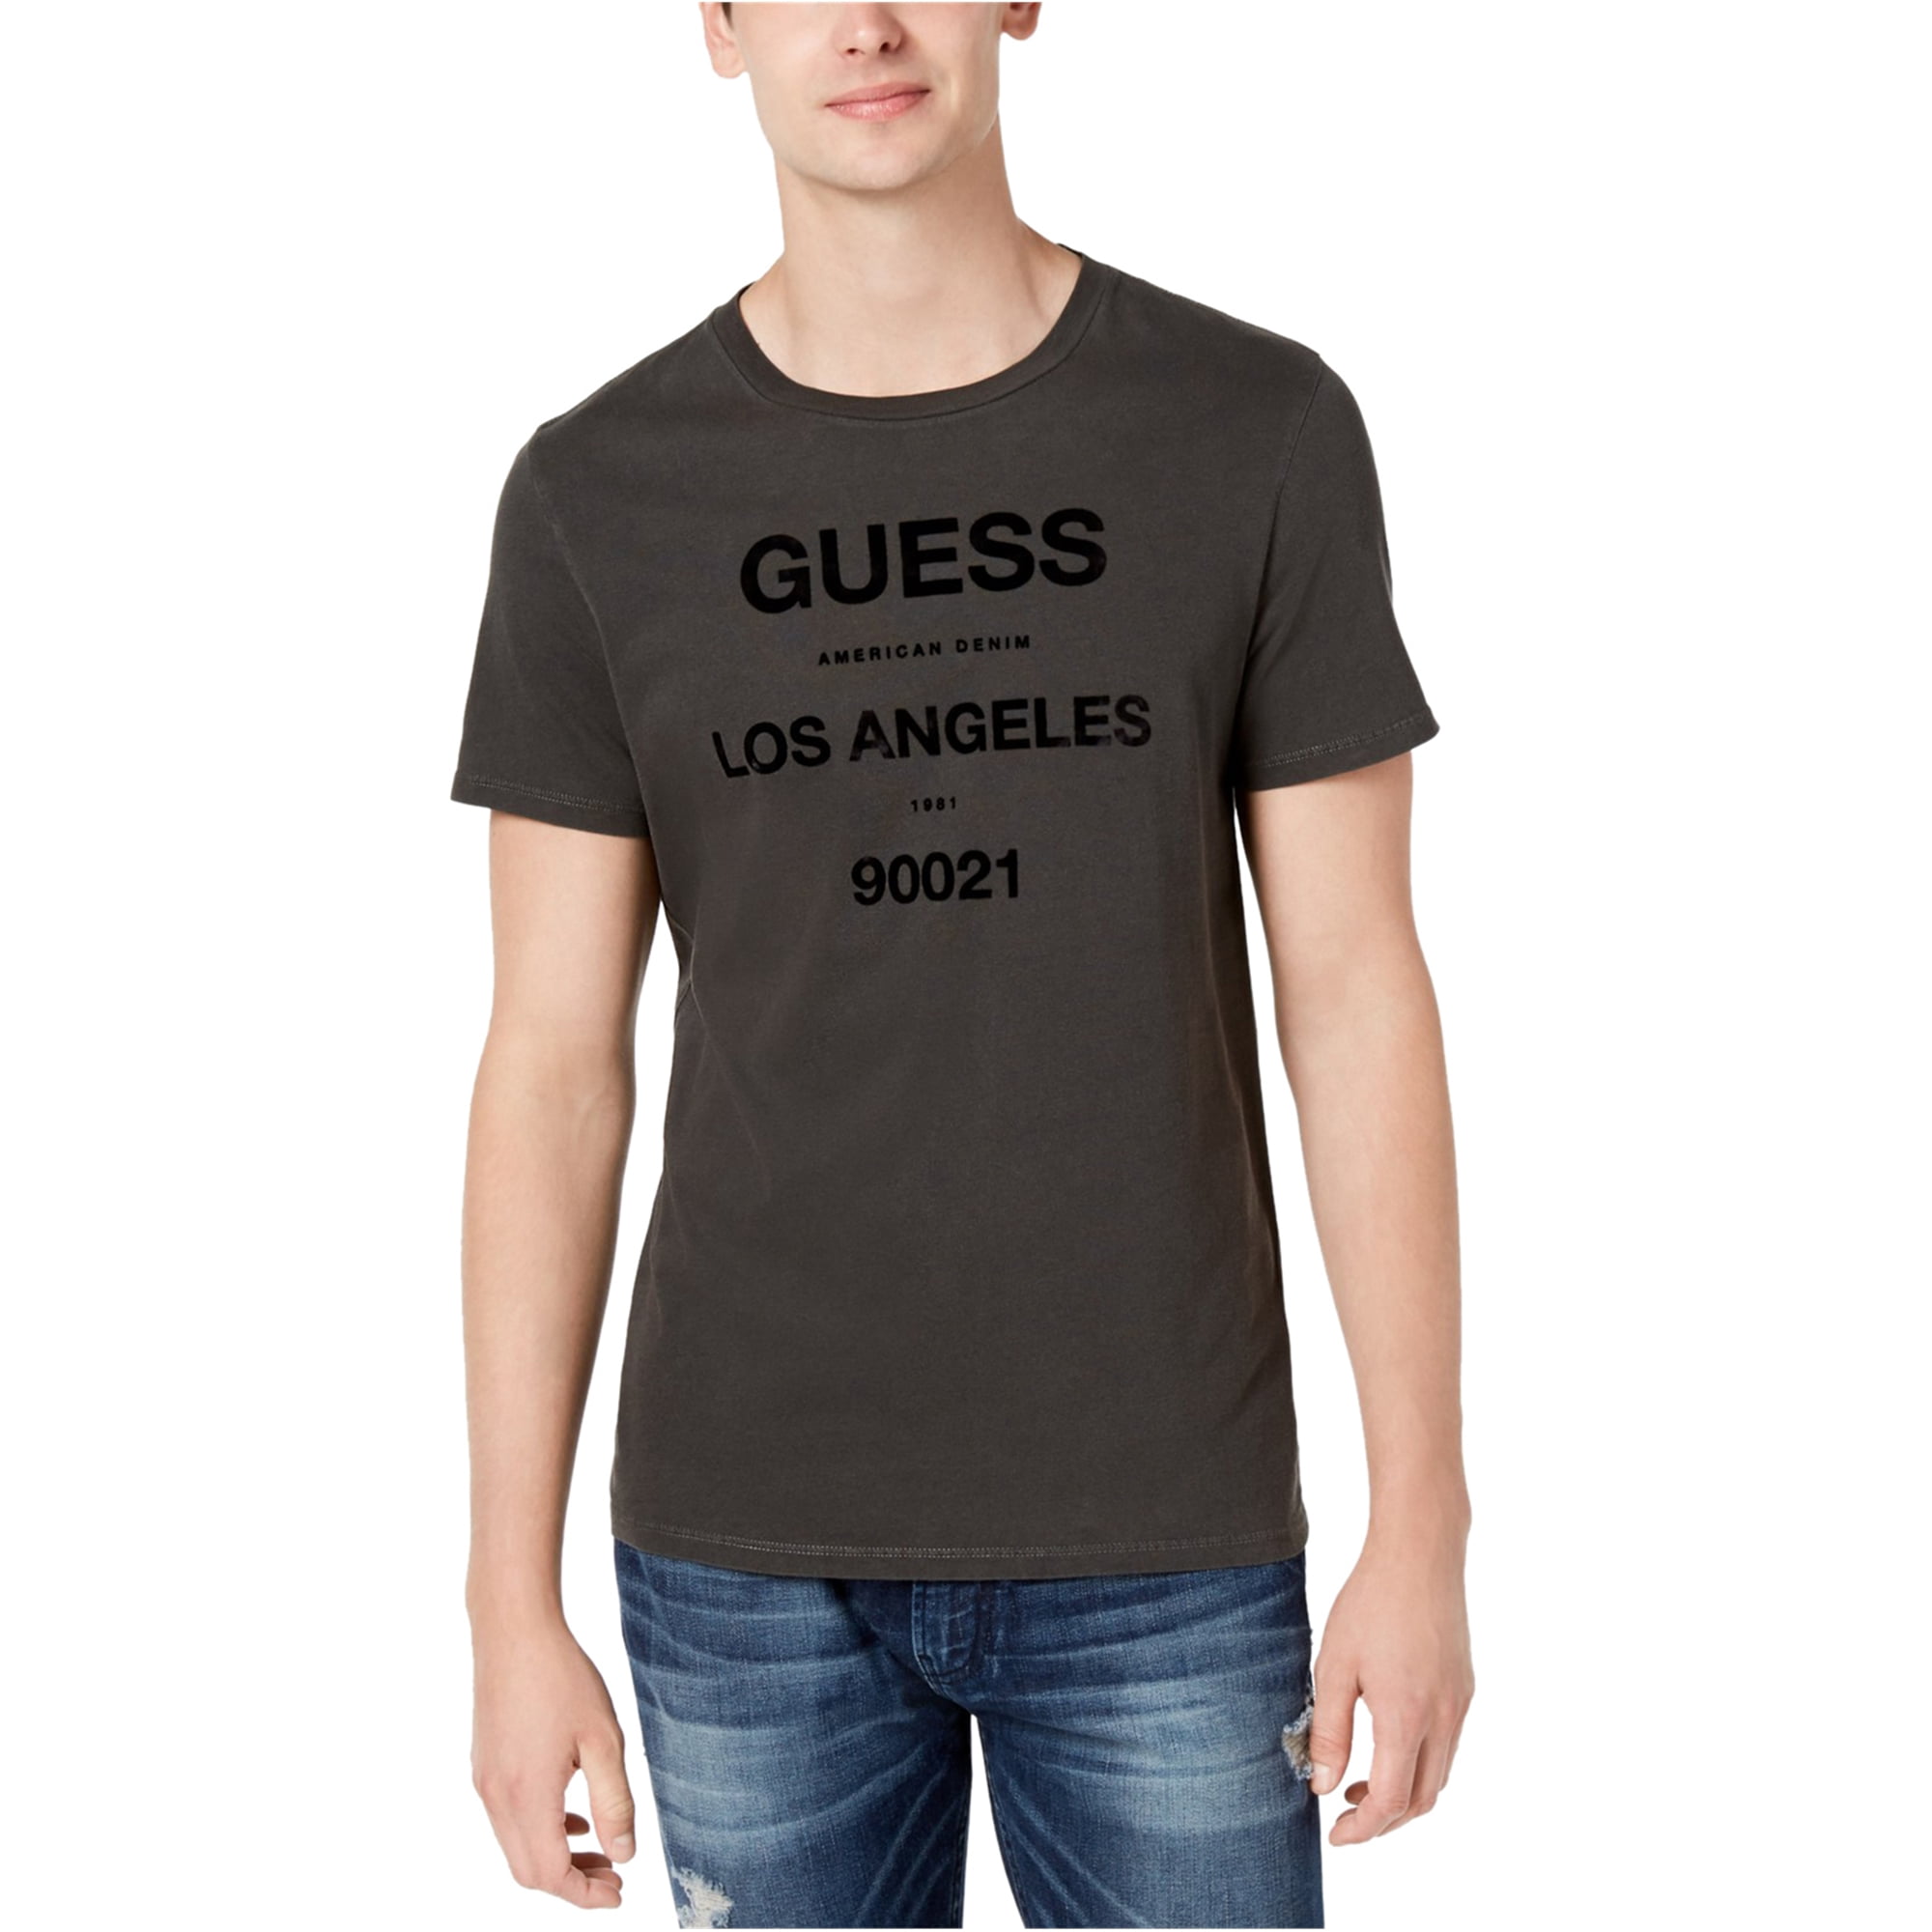 GUESS - Guess Mens La Crew Logo Embellished T-Shirt - Walmart.com ...